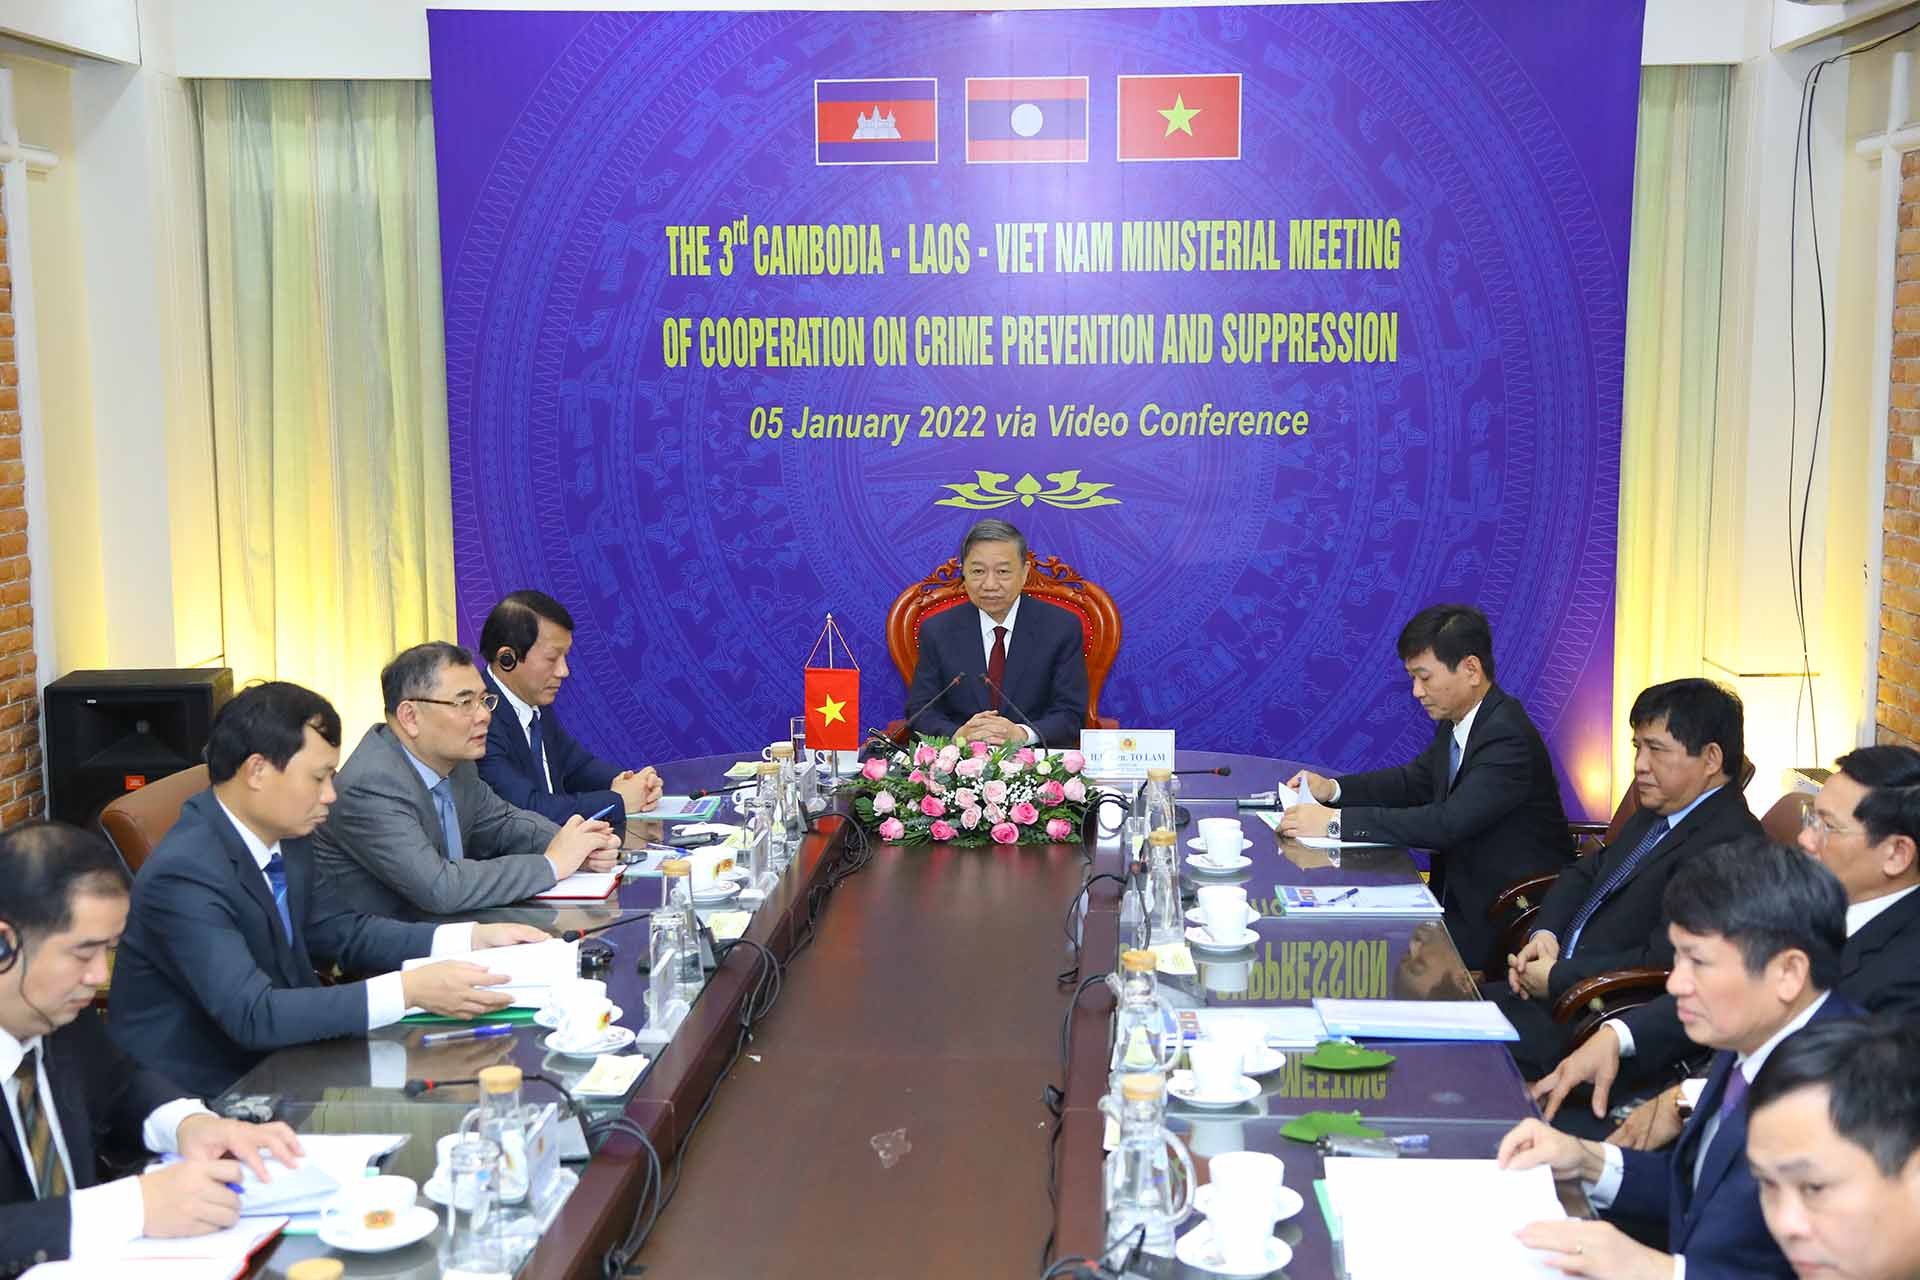 Đại tướng Tô Lâm, Ủy viên Bộ Chính trị, Bộ trưởng Bộ Công an Việt Nam phát biểu tại Hội nghị và đoàn Việt Nam tại đầu cầu Hà Nội.